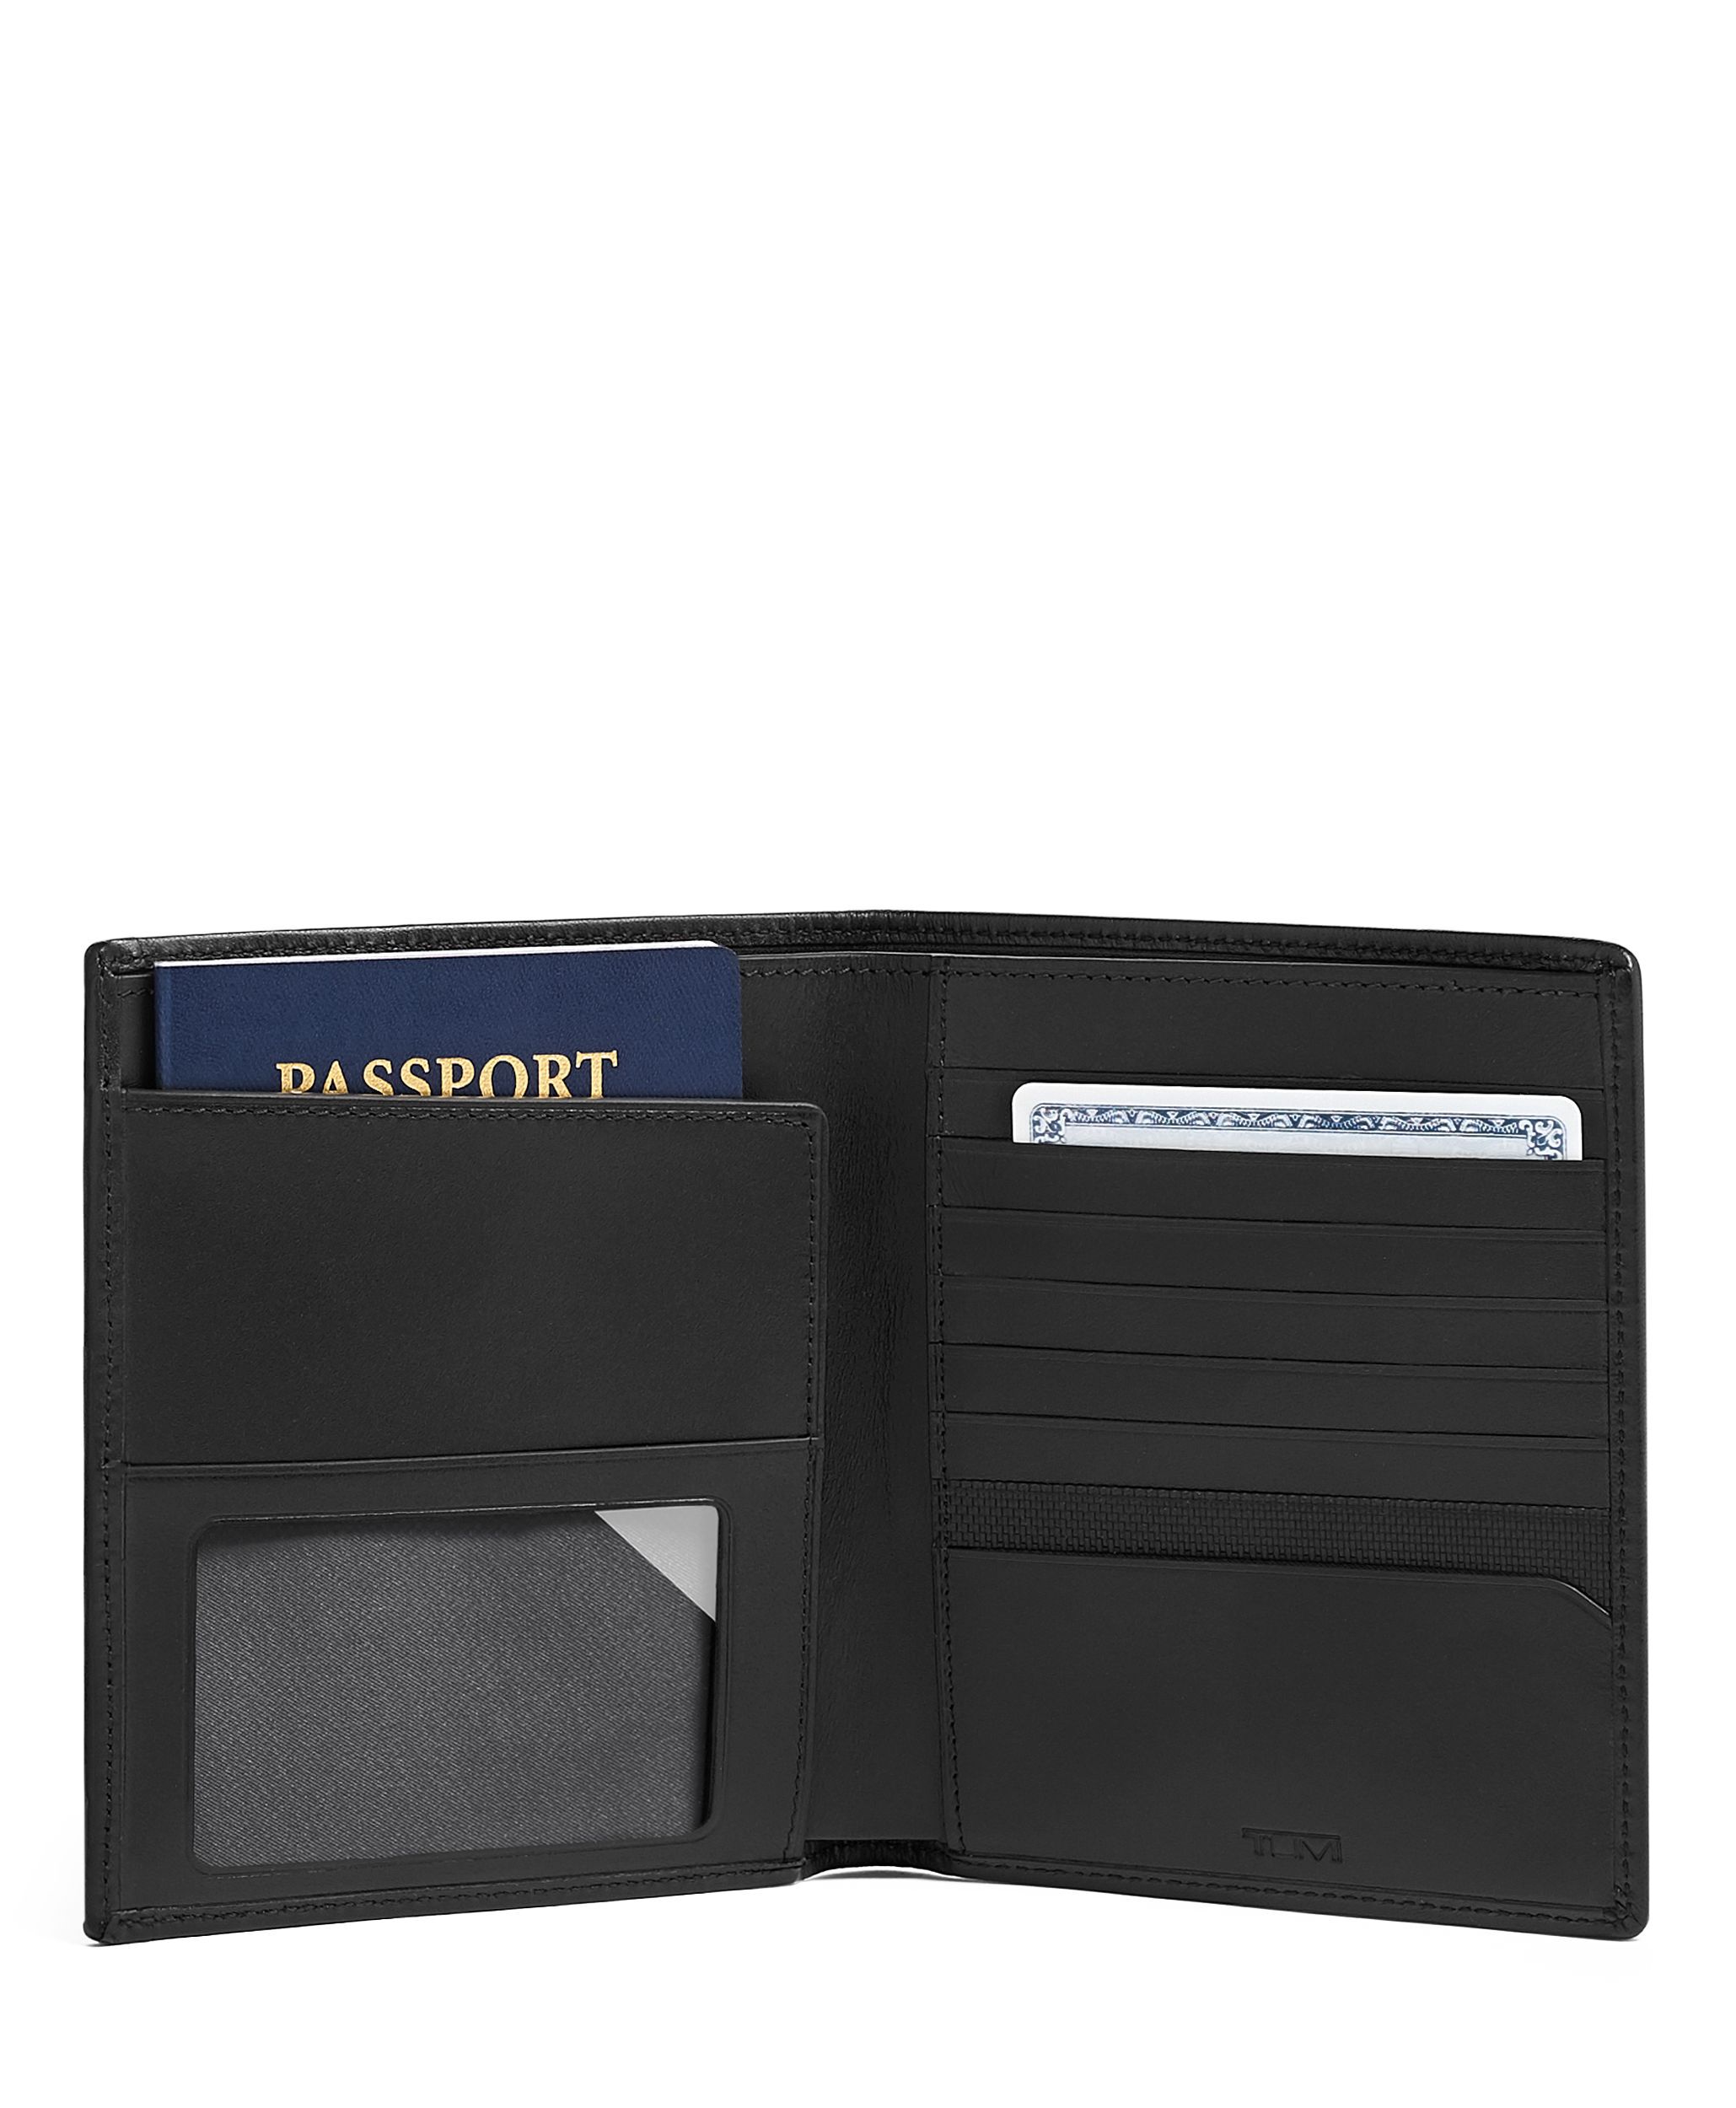 新品本革Tumi 財布付きパスポートカバー